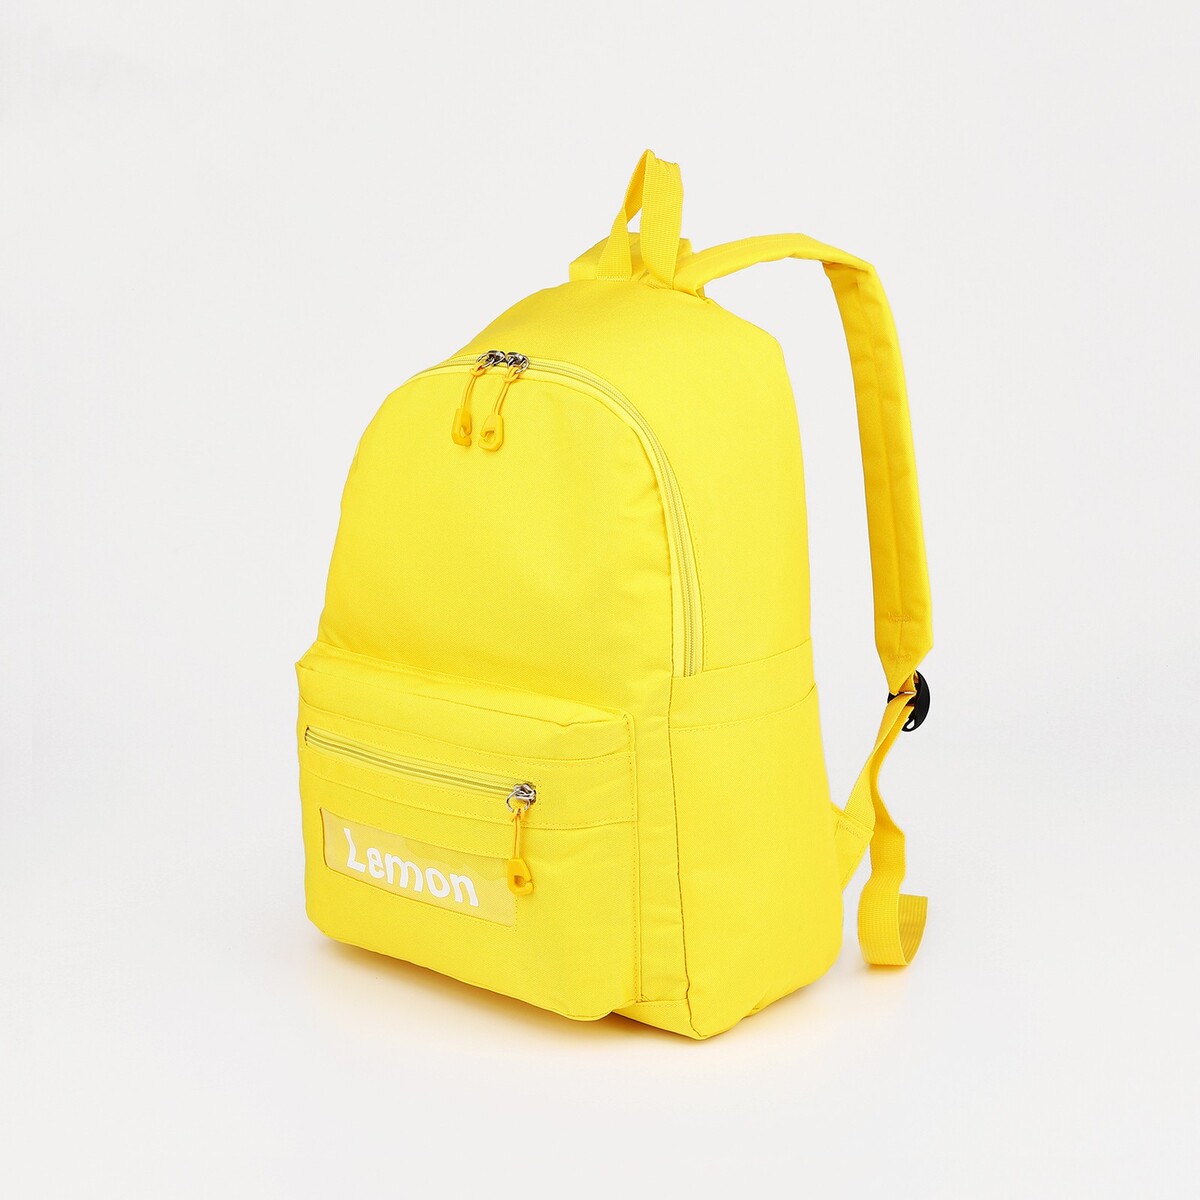 Рюкзак школьный из текстиля на молнии, 3 кармана, цвет желтый